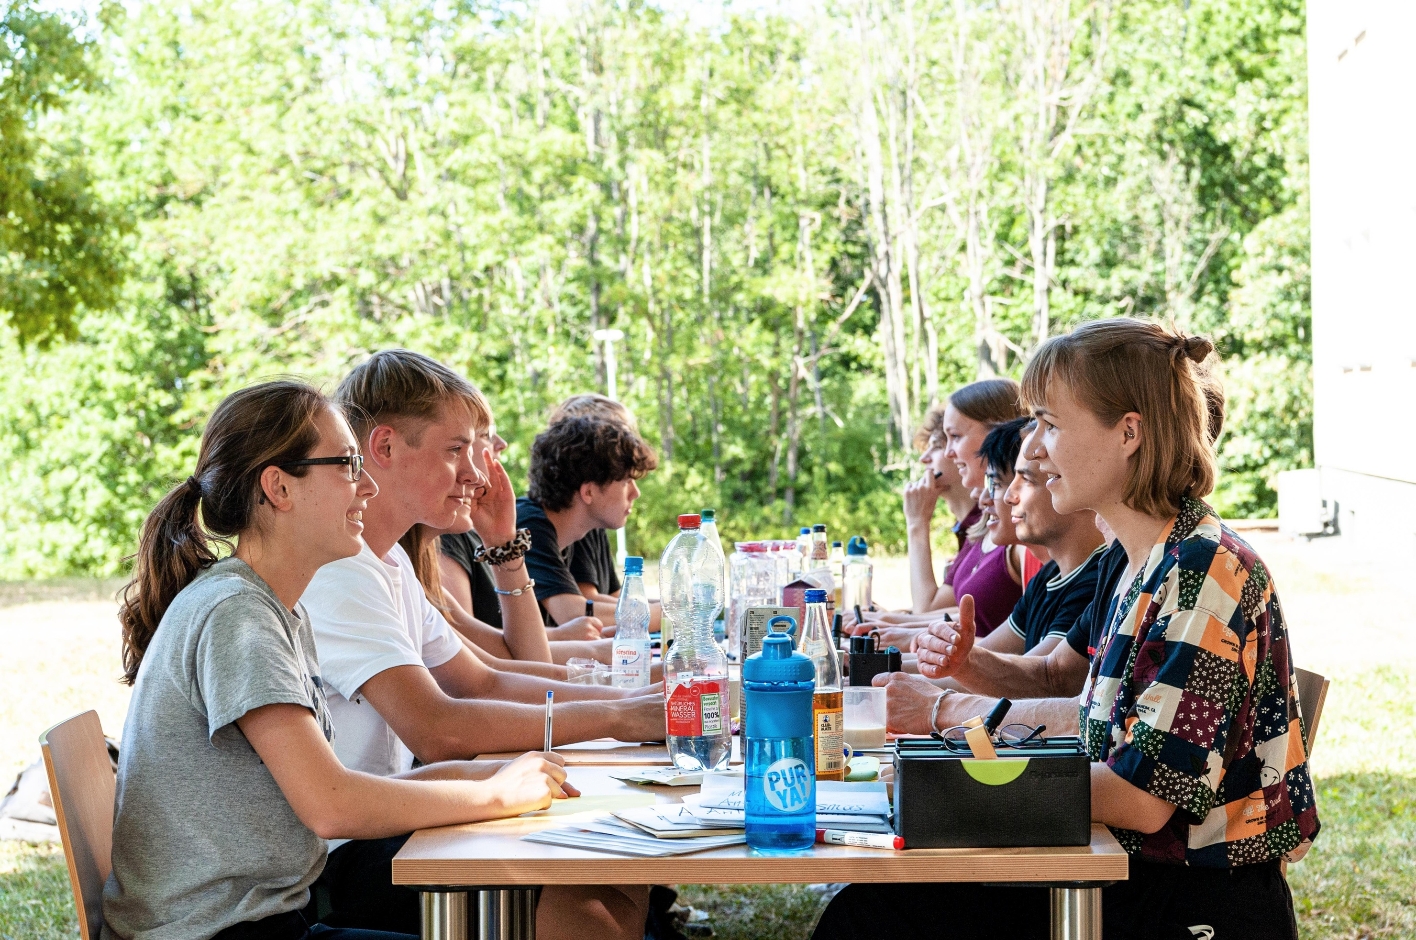 Zu sehen sind mehrere Jugendliche an einem Tisch in der Nähe der Jugendbegegnungsstätte, die angeregt miteinander diskutieren. Neben Getränken ist Lehrmaterialauf den Tischen verstreut.